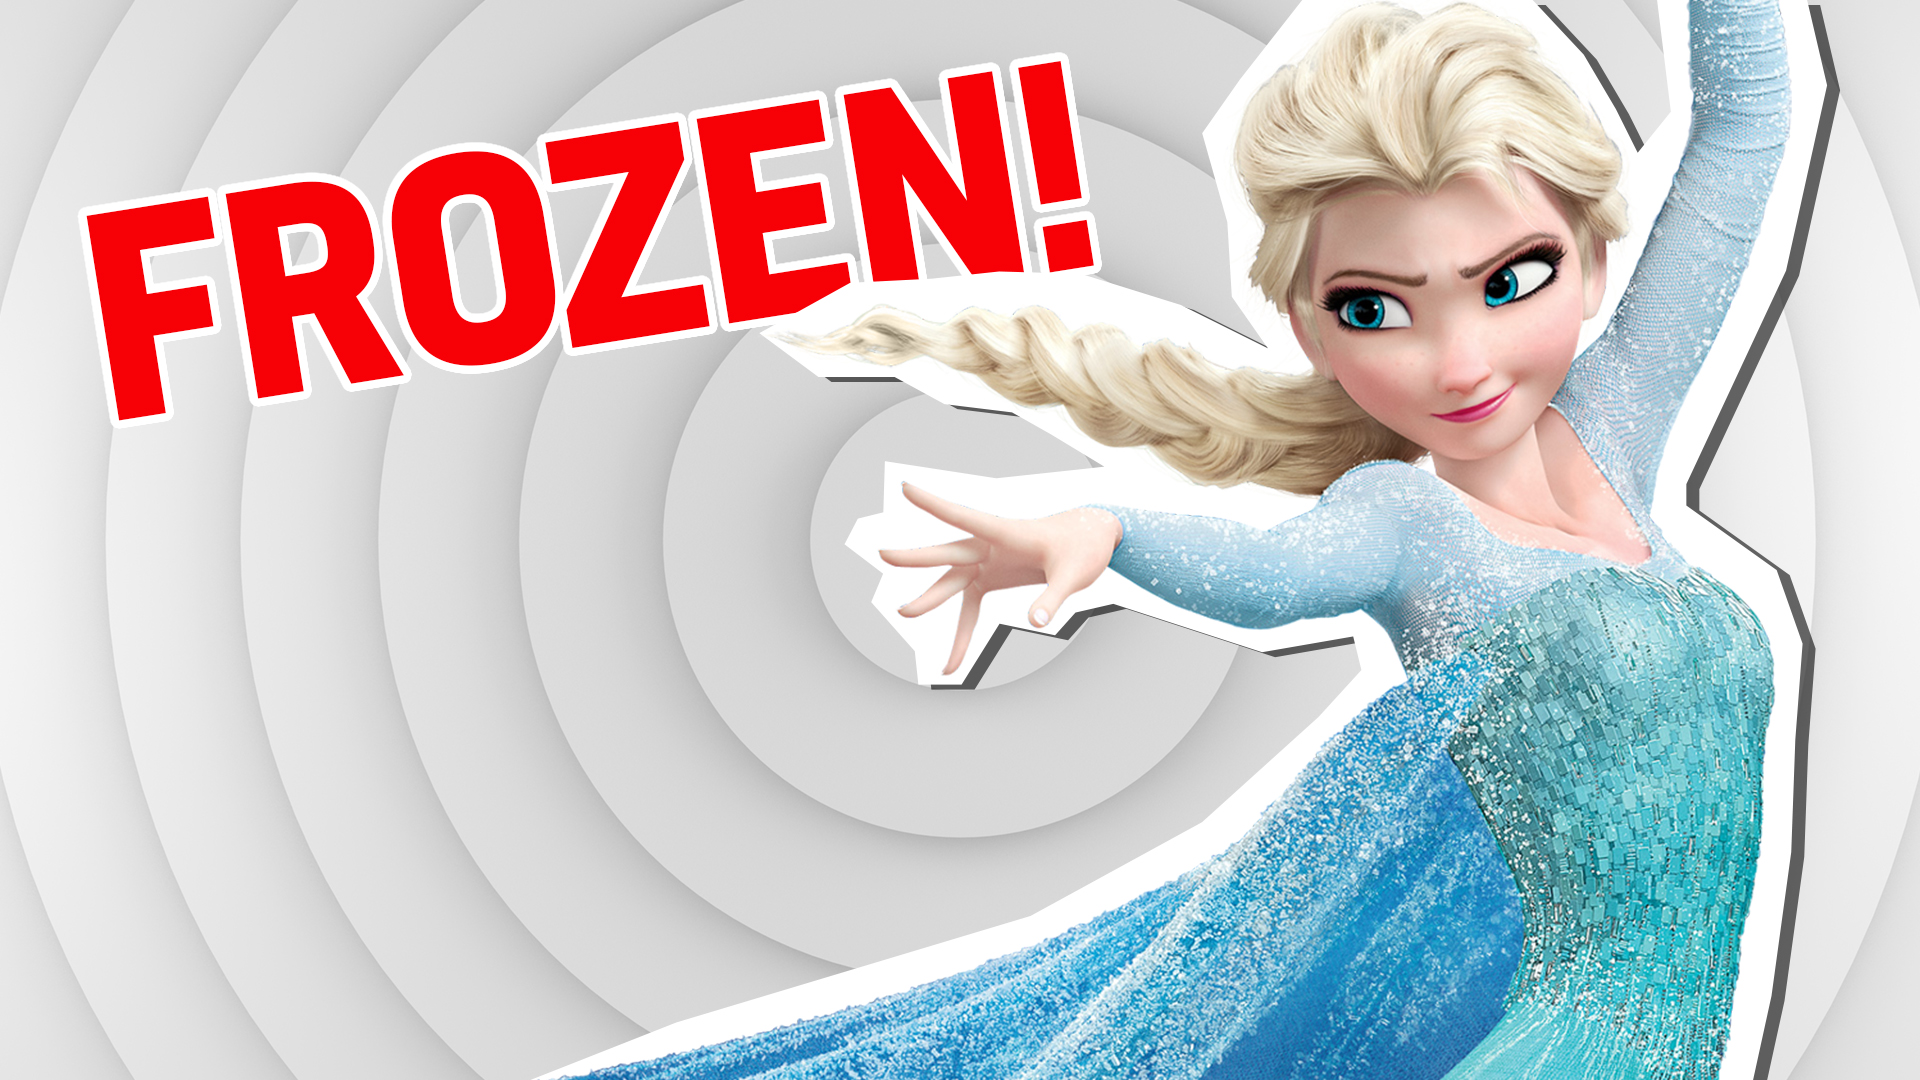 Elsa in Frozen